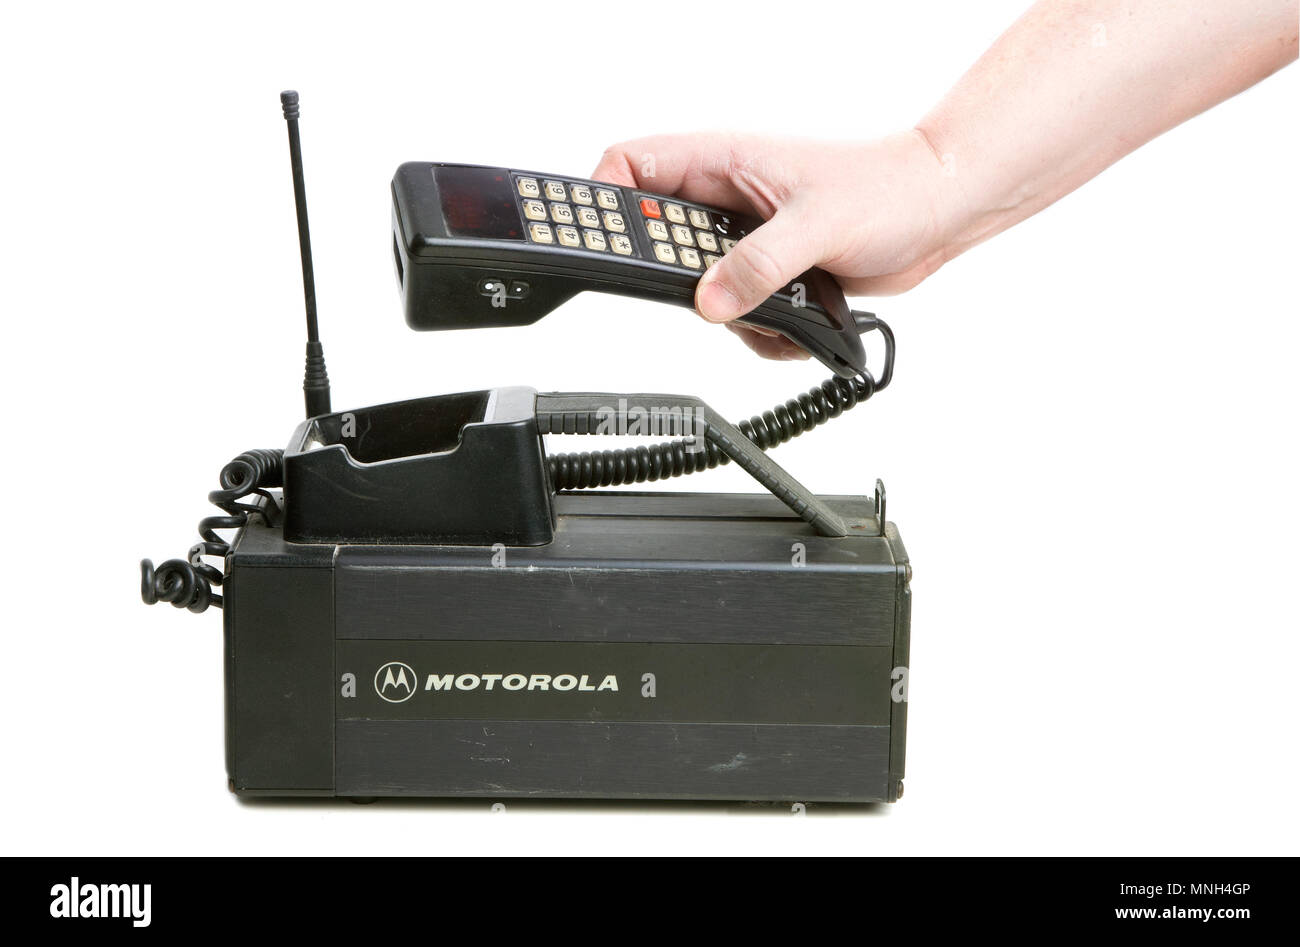 Hallstahammar, Svezia - 10 dicembre 2012: Una mano holdning il ricevitore di un degli anni ottanta era Motorola MCR 9500XL mobilephone utilizzato in Svezia. Foto Stock